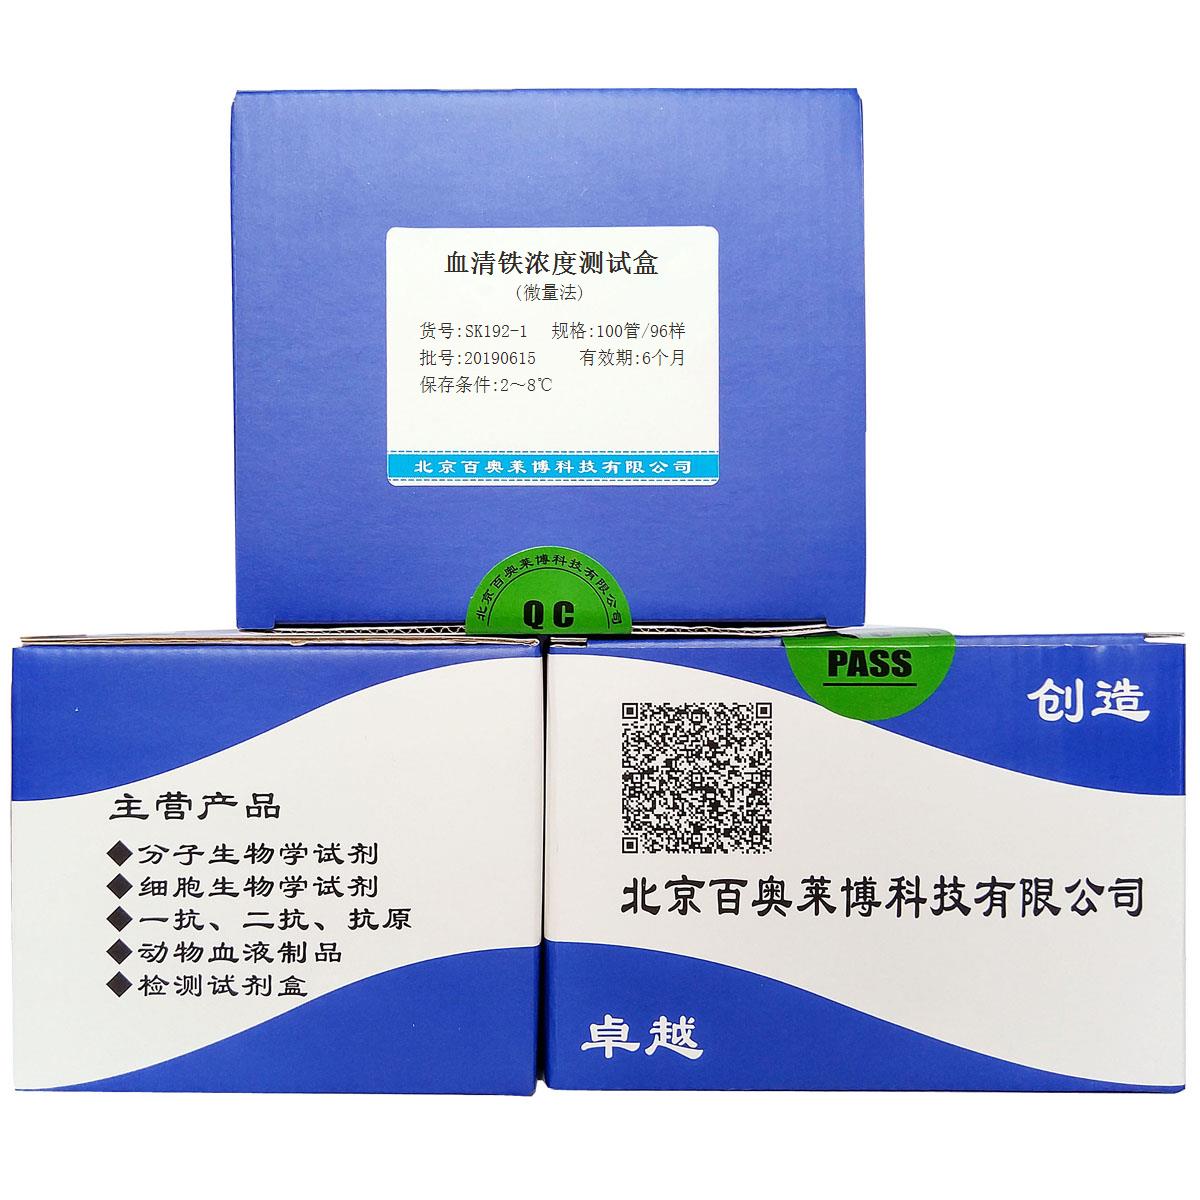 血清铁浓度测试盒(微量法)北京现货